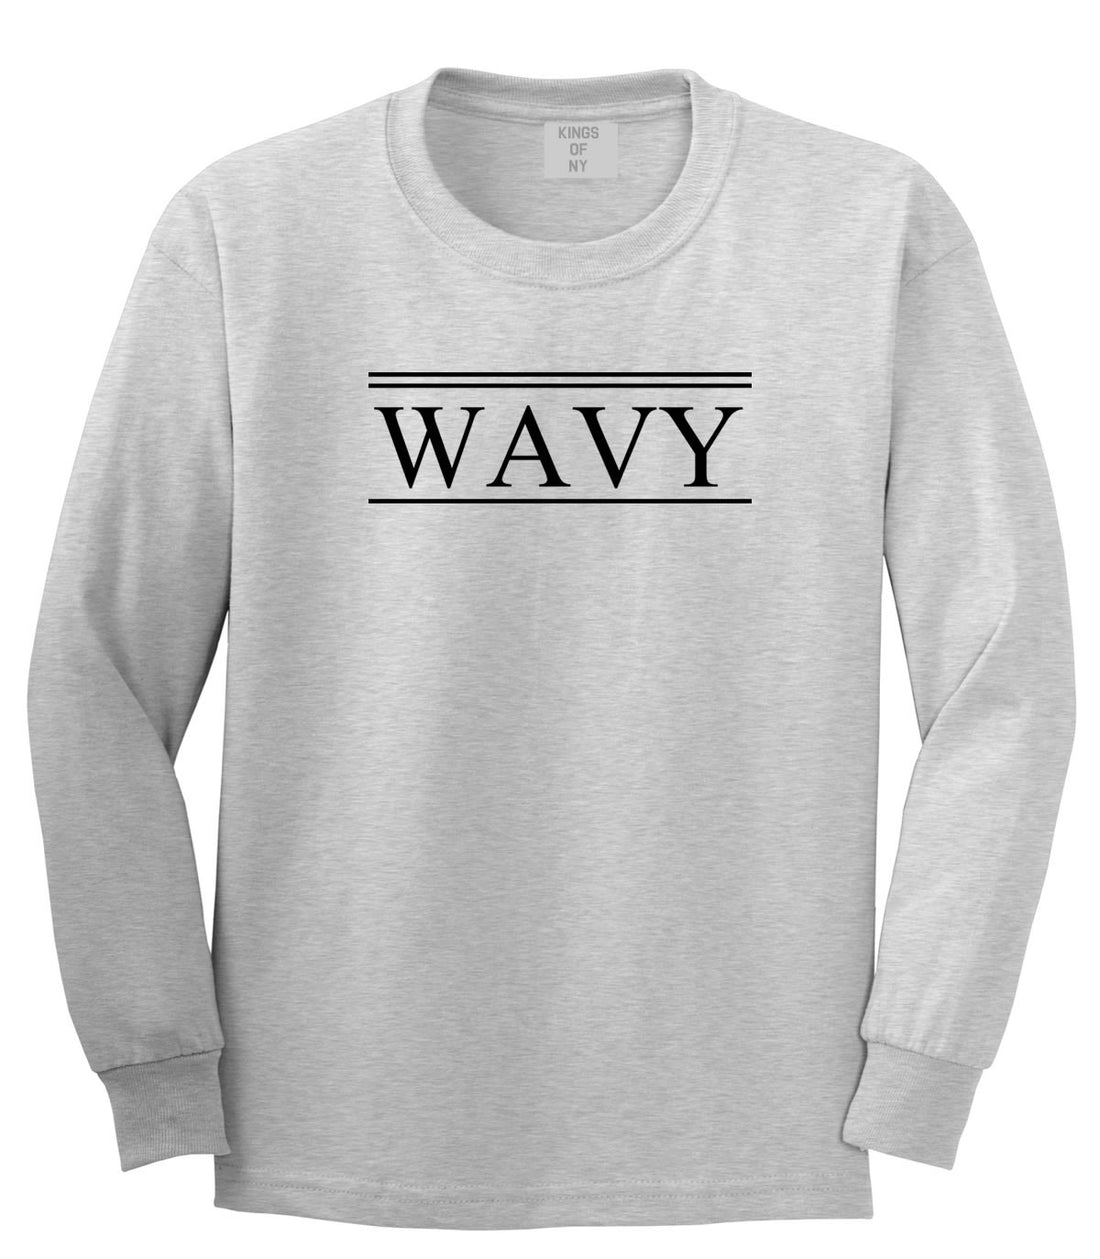 Wavy Harlem Long Sleeve T-Shirt in Grey By Kings Of NY